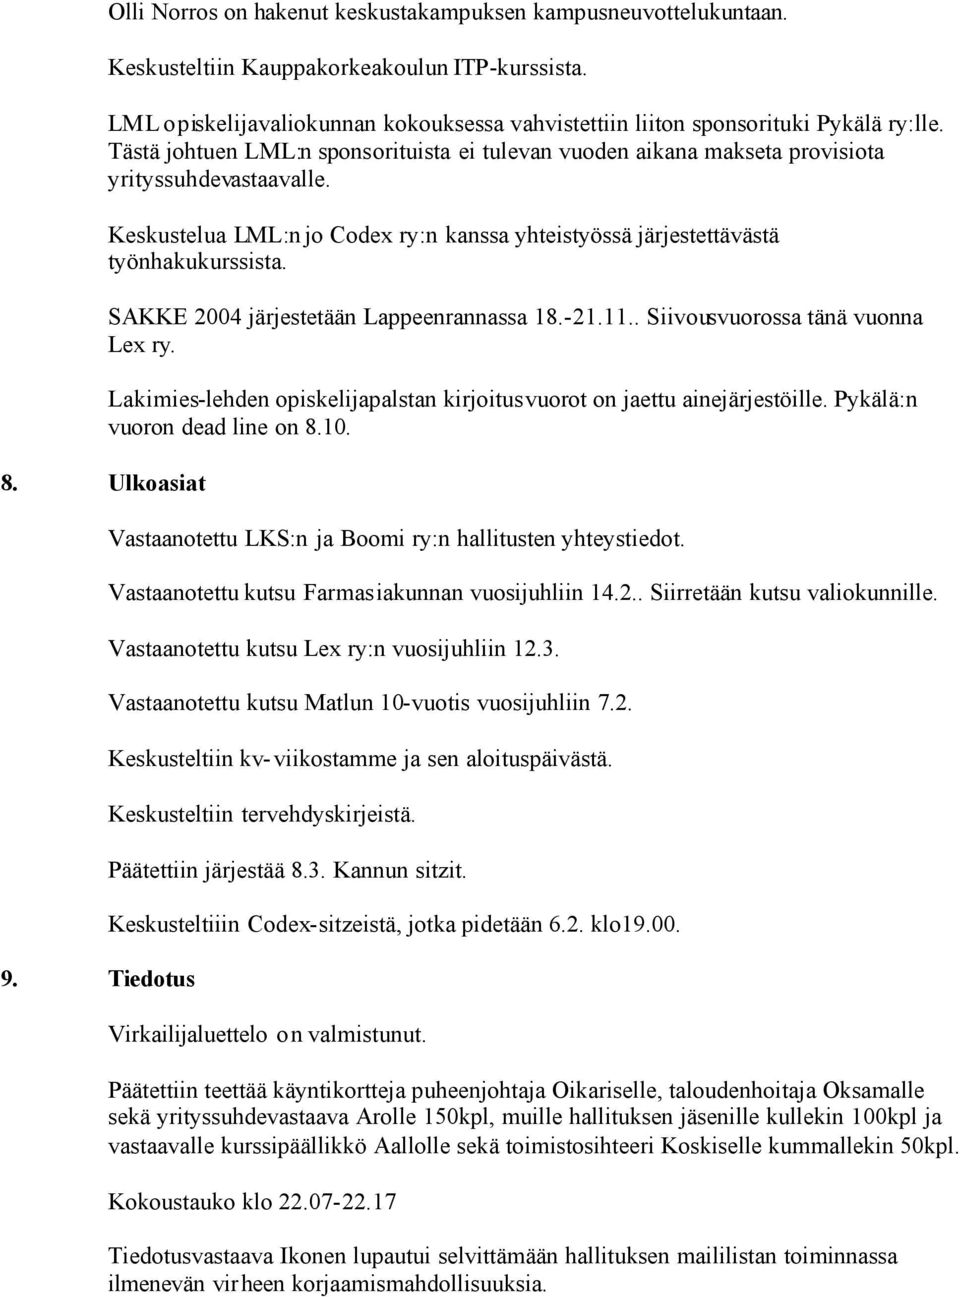 Keskustelua LML:n jo Codex ry:n kanssa yhteistyössä järjestettävästä työnhakukurssista. SAKKE 2004 järjestetään Lappeenrannassa 18.-21.11.. Siivousvuorossa tänä vuonna Lex ry.